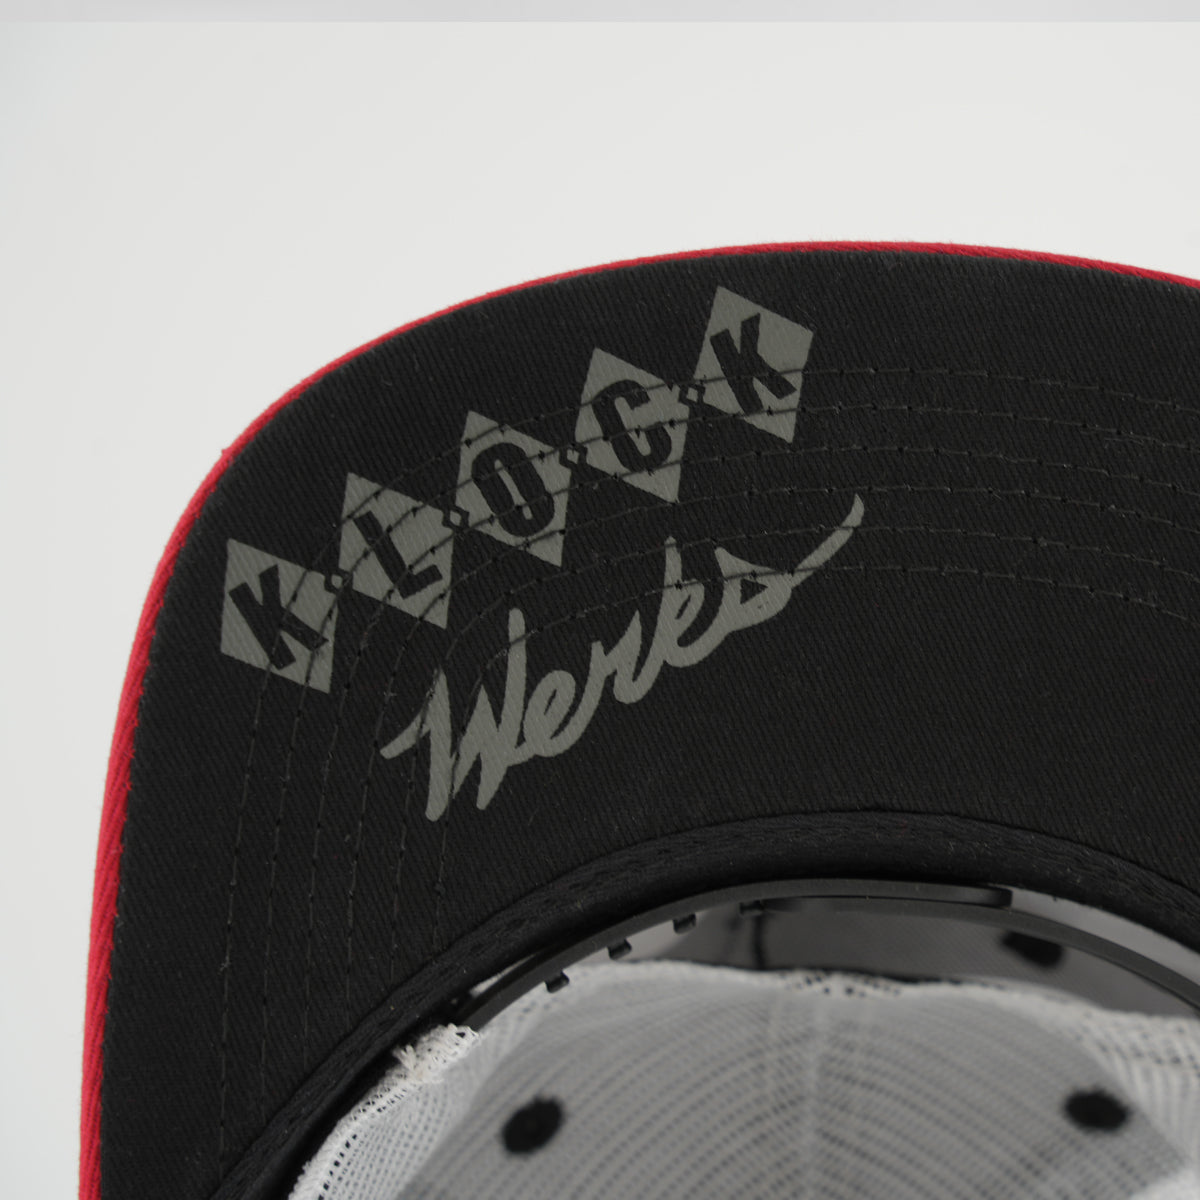 Klock Werks Fist Bump Stripe Trucker Hat for Men with Klock Werks imprinted on the brim